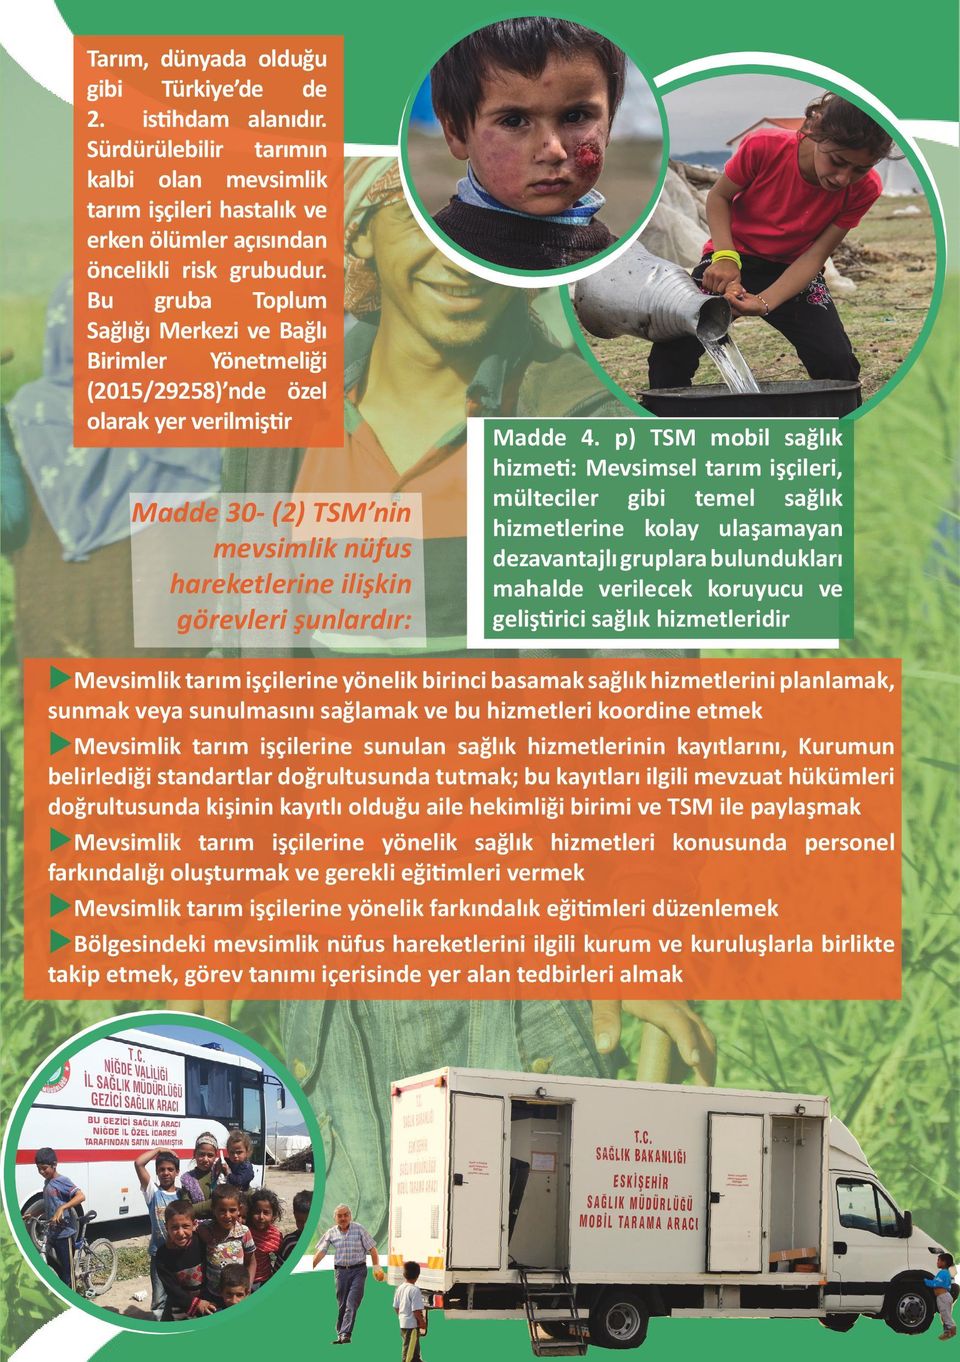 p) TSM mobil sağlık hizmeti: Mevsimsel tarım işçileri, mülteciler gibi temel sağlık hizmetlerine kolay ulaşamayan dezavantajlı gruplara bulundukları mahalde verilecek koruyucu ve geliştirici sağlık